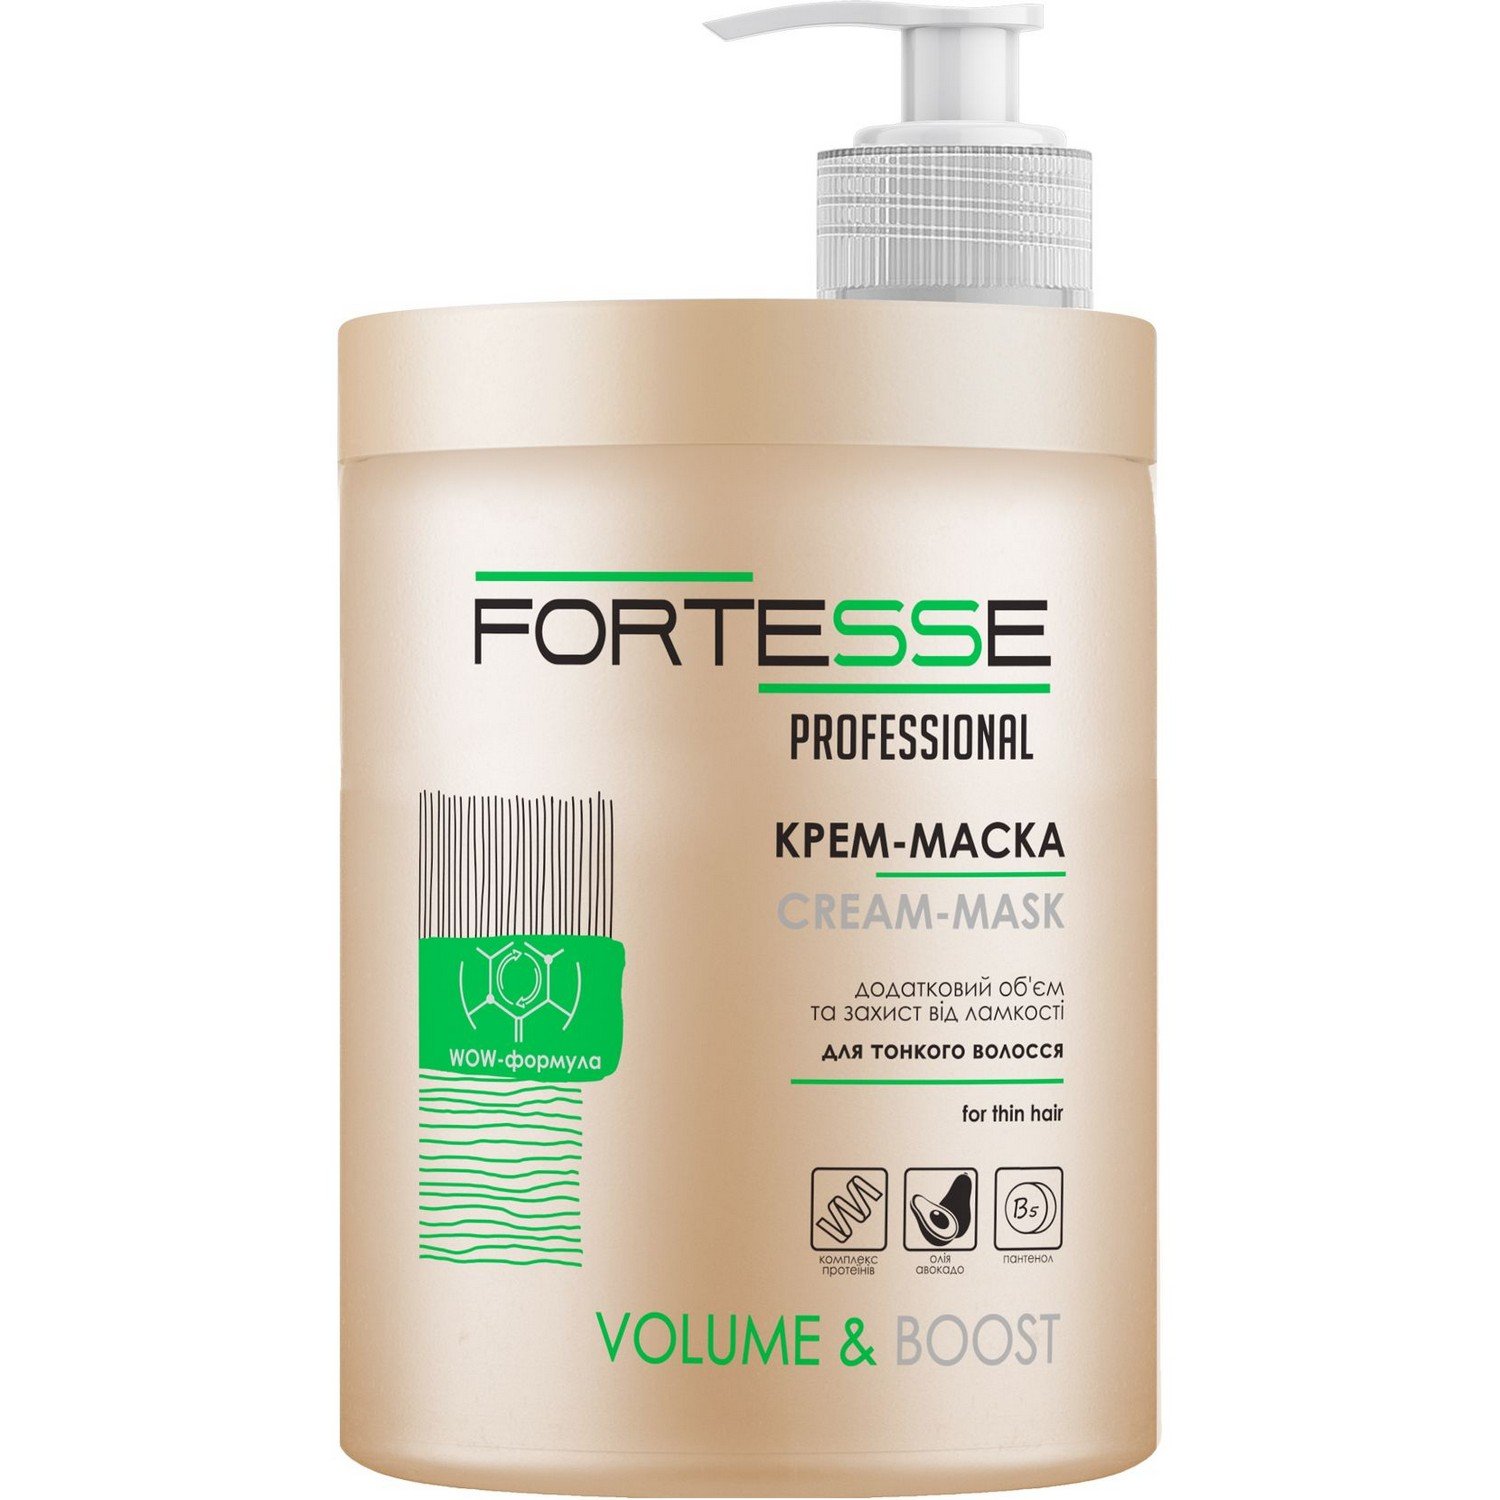 Маска-крем Fortesse Professional Volume & Boost Объем, для тонких волос, с дозатором, 1000 мл - фото 1